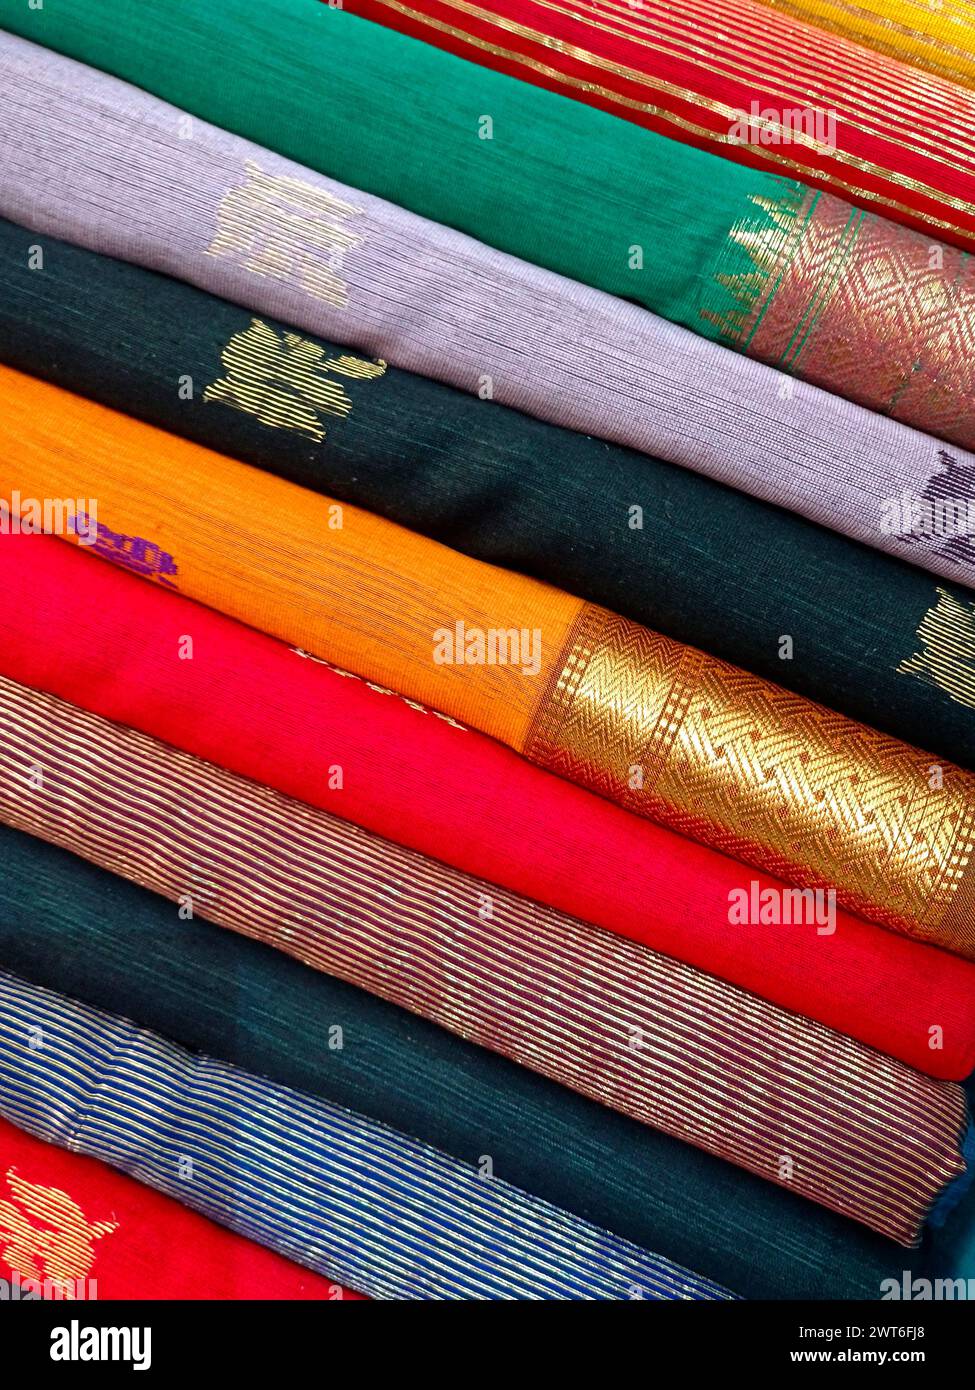 Vue rapprochée de saris ou de sarees empilés dans l'affichage d'un magasin de détail, pour une utilisation comme arrière-plan de textiles indiens. Banque D'Images